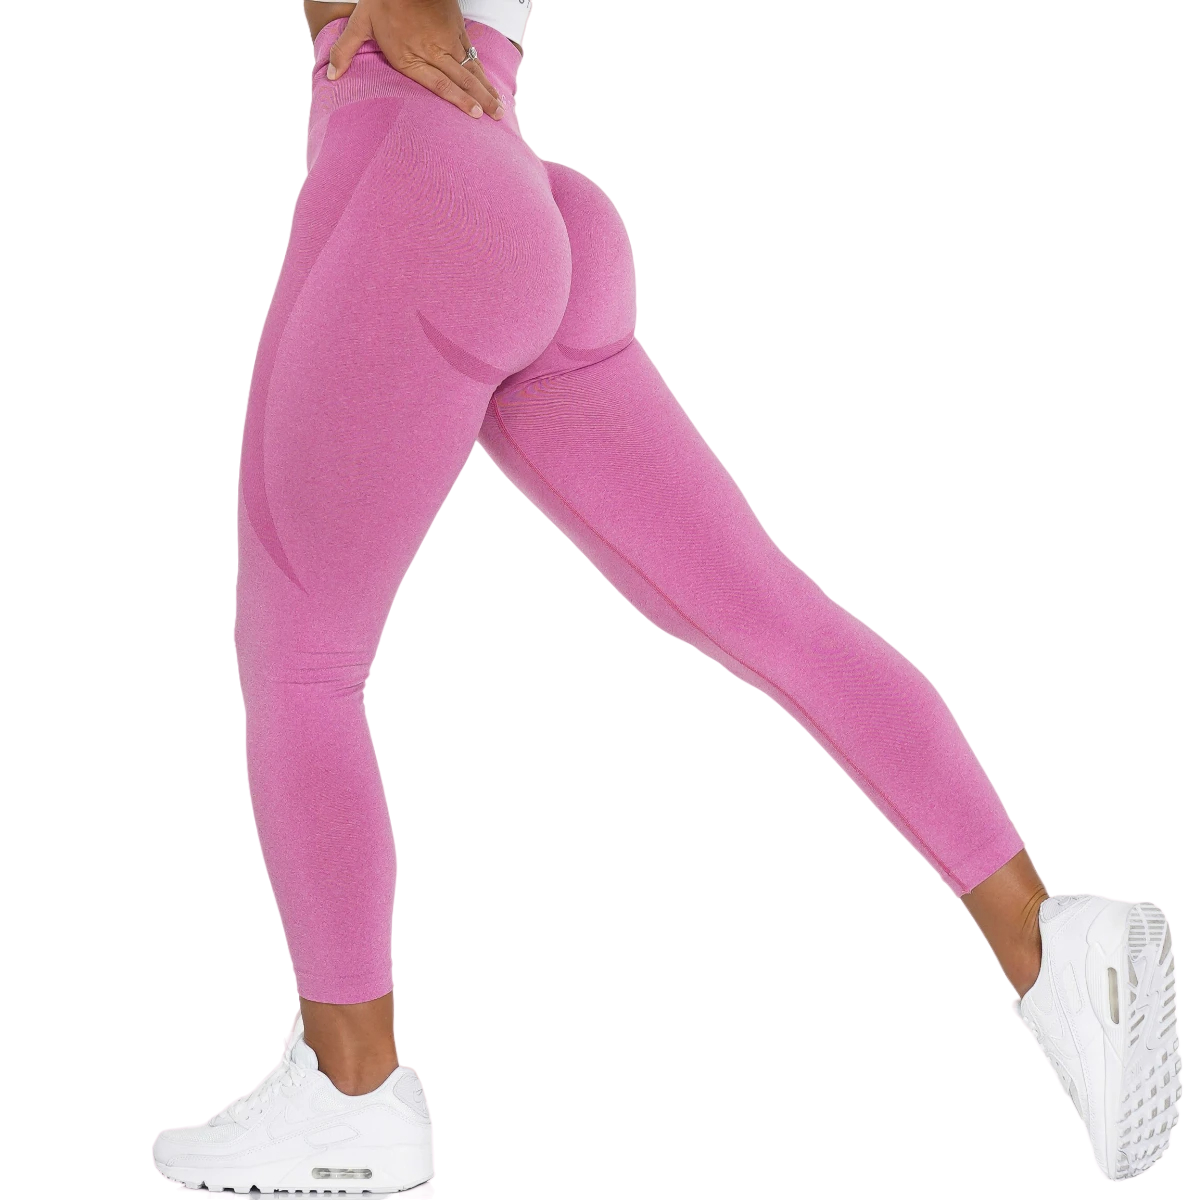 Gym Leggings - Leggings With Bum Lift-Davmart-Pink-S-Davmart SKUFKD6VYY60K77T3P